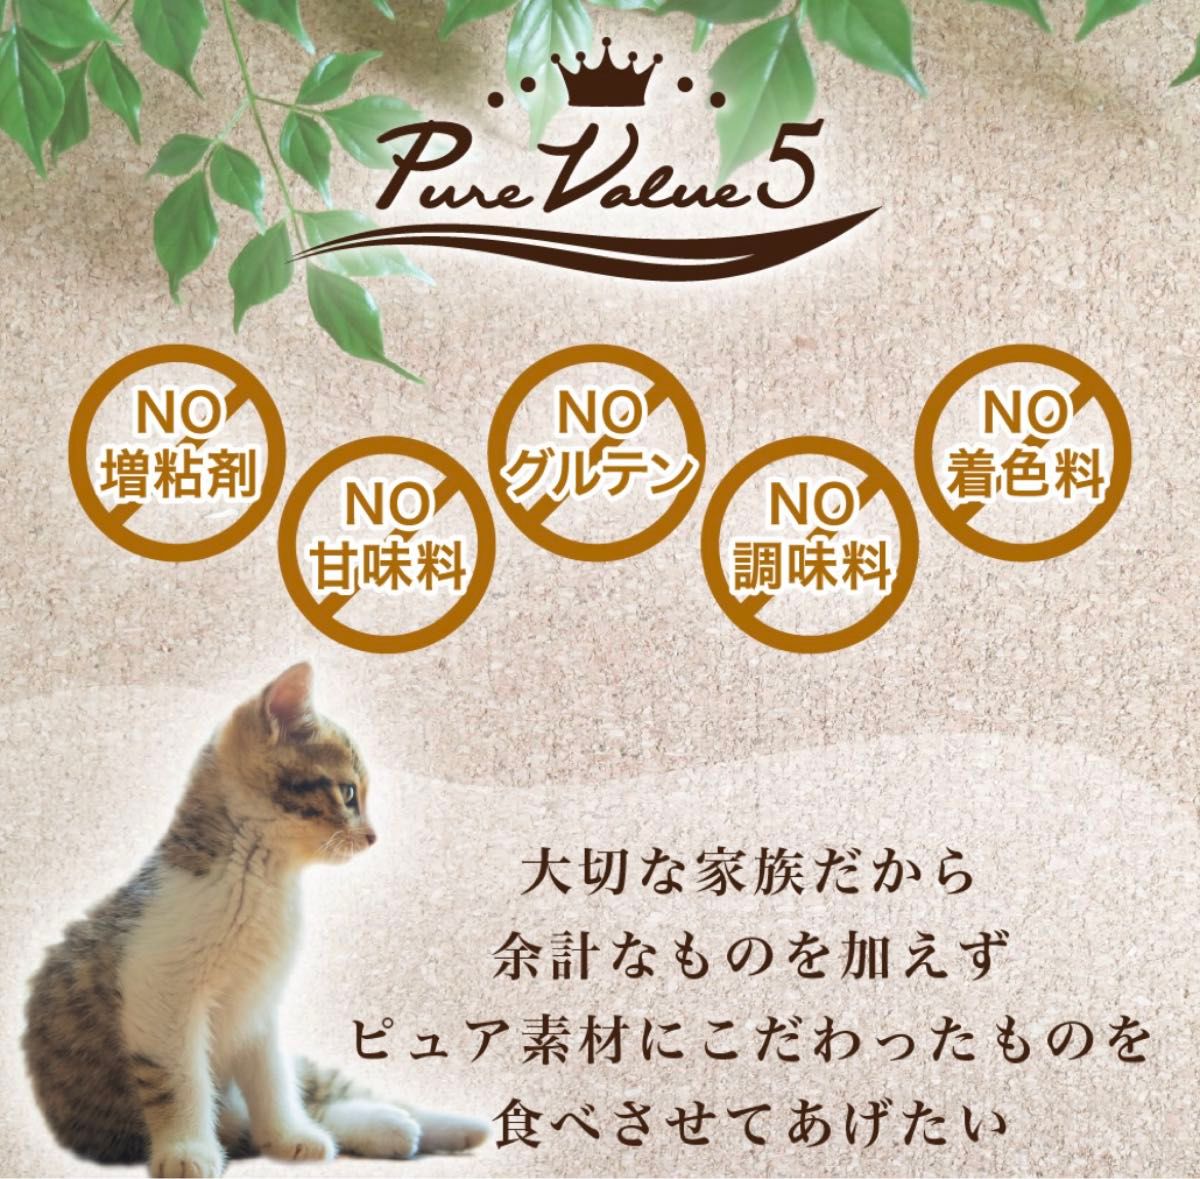 新品！【猫】【お試し4種セット】無添加ピュア 日本産 猫用おやつ ねこぴゅーれ PureValue5 トライアルセット 16本入 